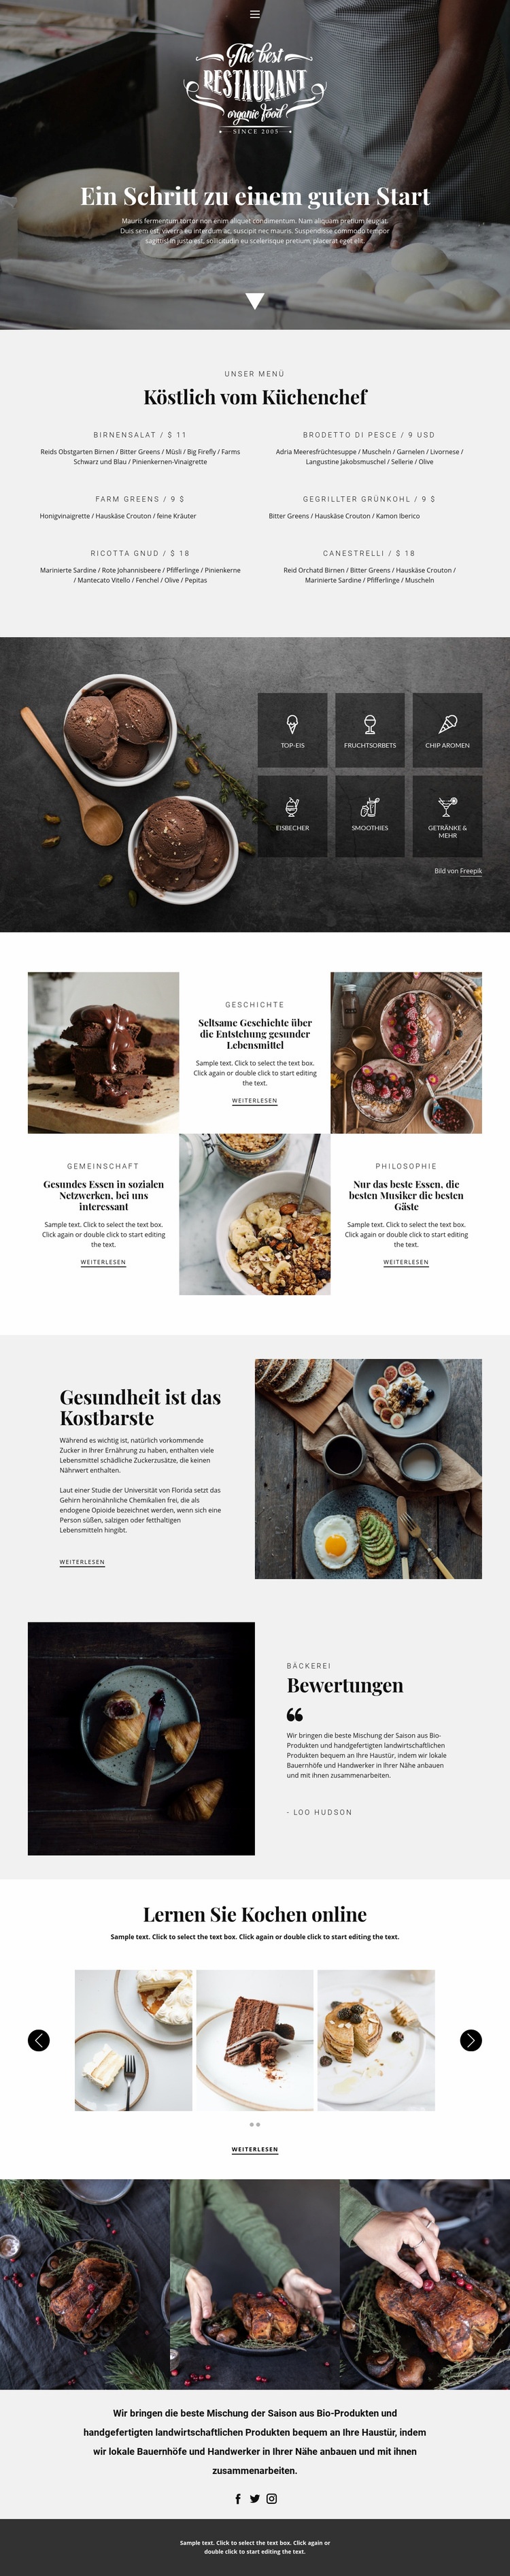 Rezepte und Kochstunden Website design